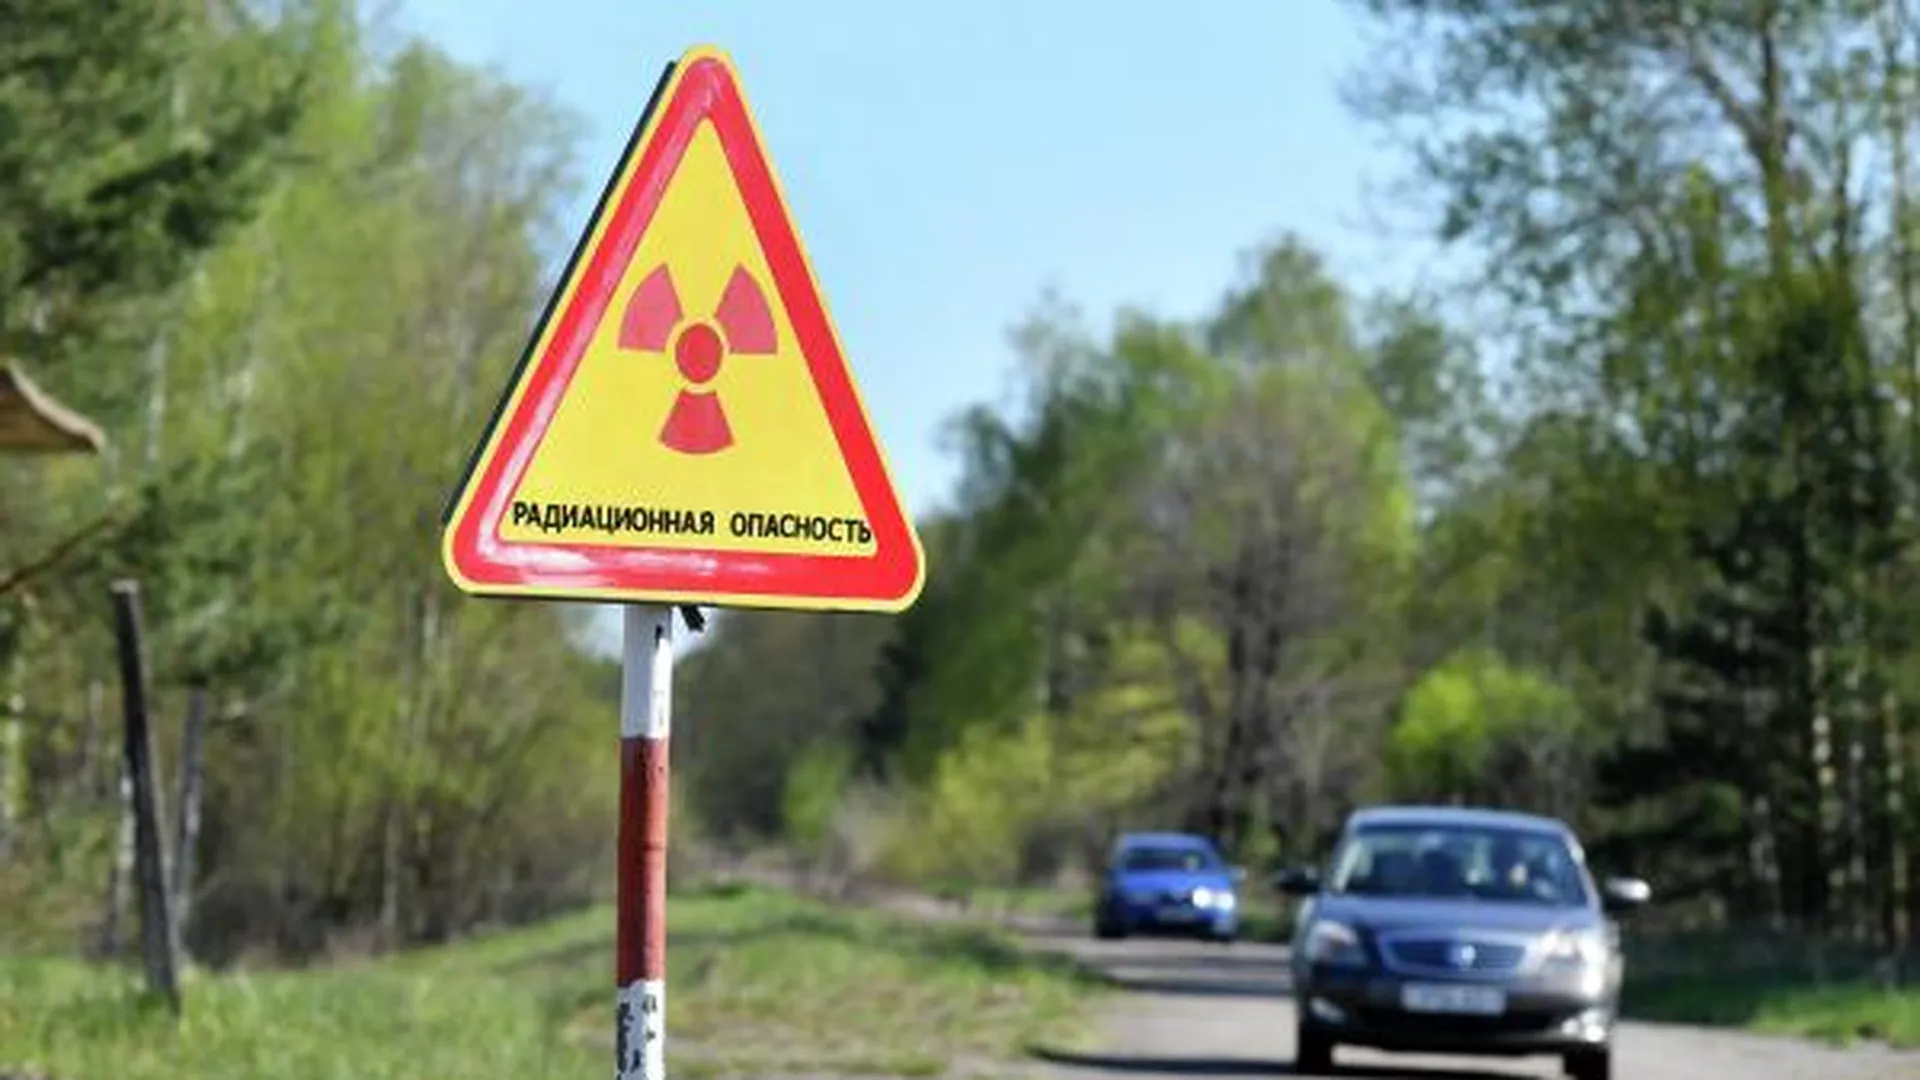 Жителям Иркутской области предложили найти радиоактивную капсулу за вознаграждение